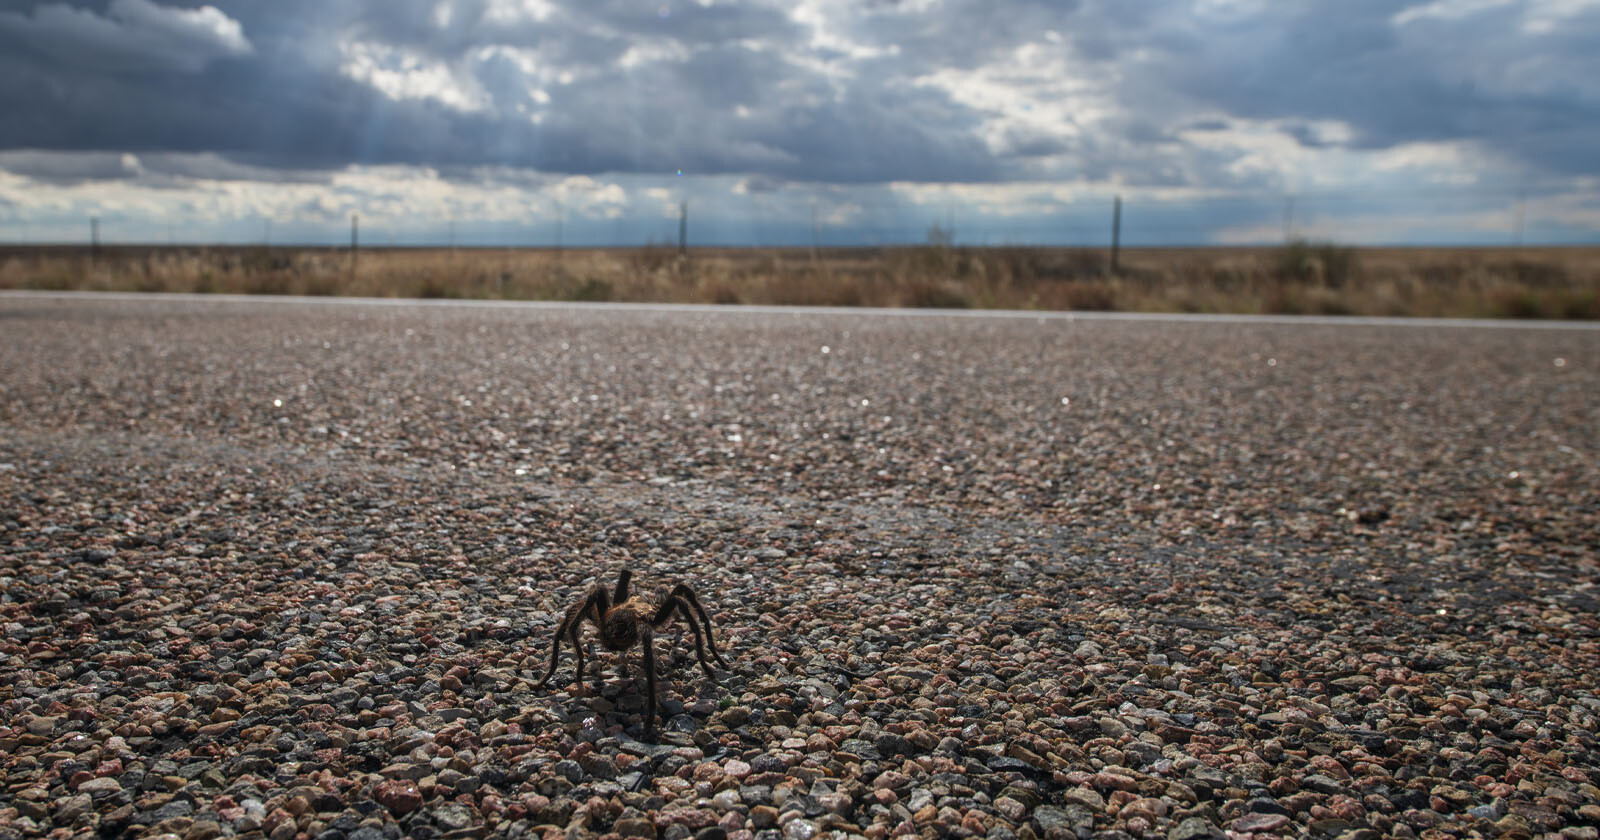 Photos of the Tarantula Migration Through a Small Town in Colorado